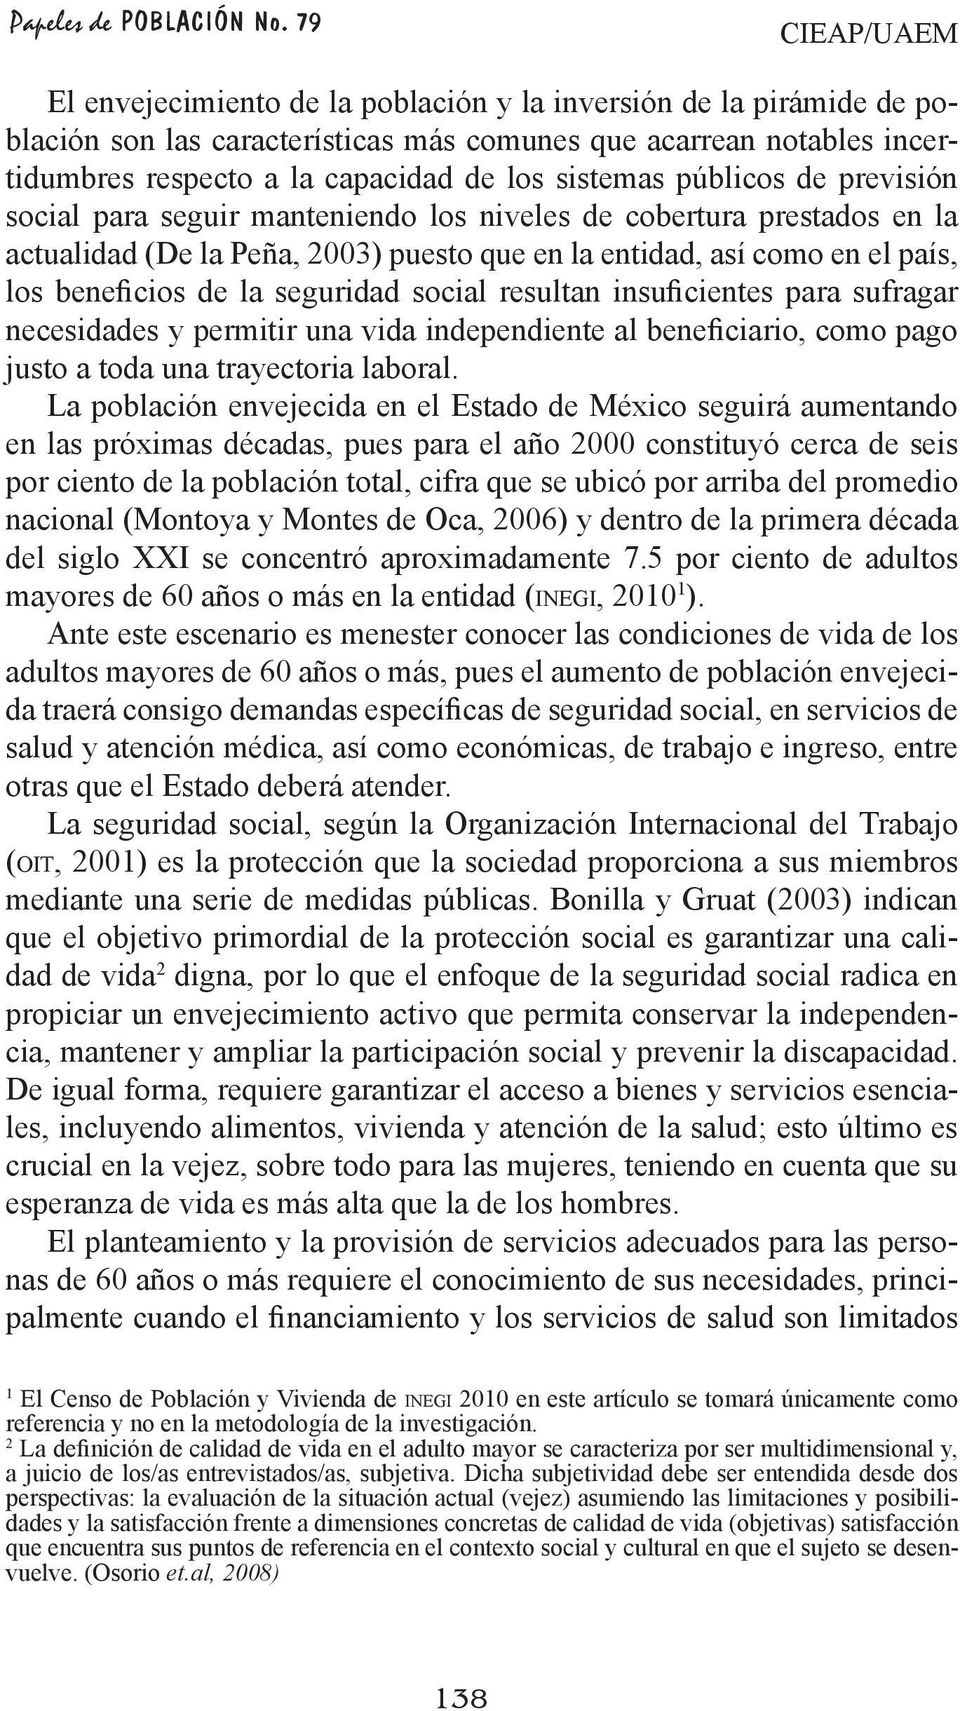 sistemas públicos de previsión social para seguir manteniendo los niveles de cobertura prestados en la actualidad (De la Peña, 2003) puesto que en la entidad, así como en el país, los beneficios de